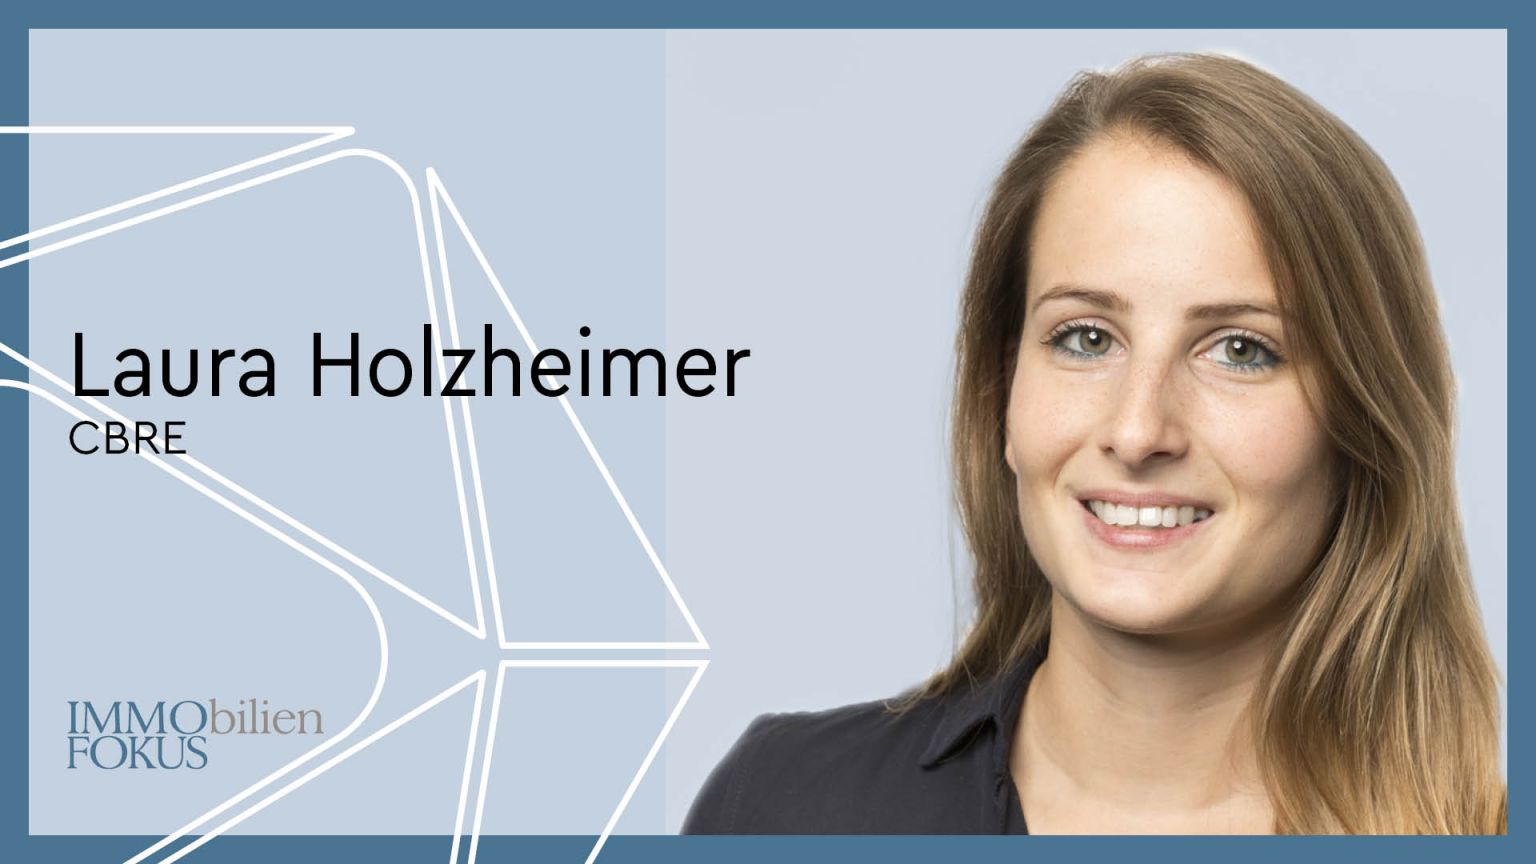 Laura Holzheimer ist neuer Head of Research bei CBRE